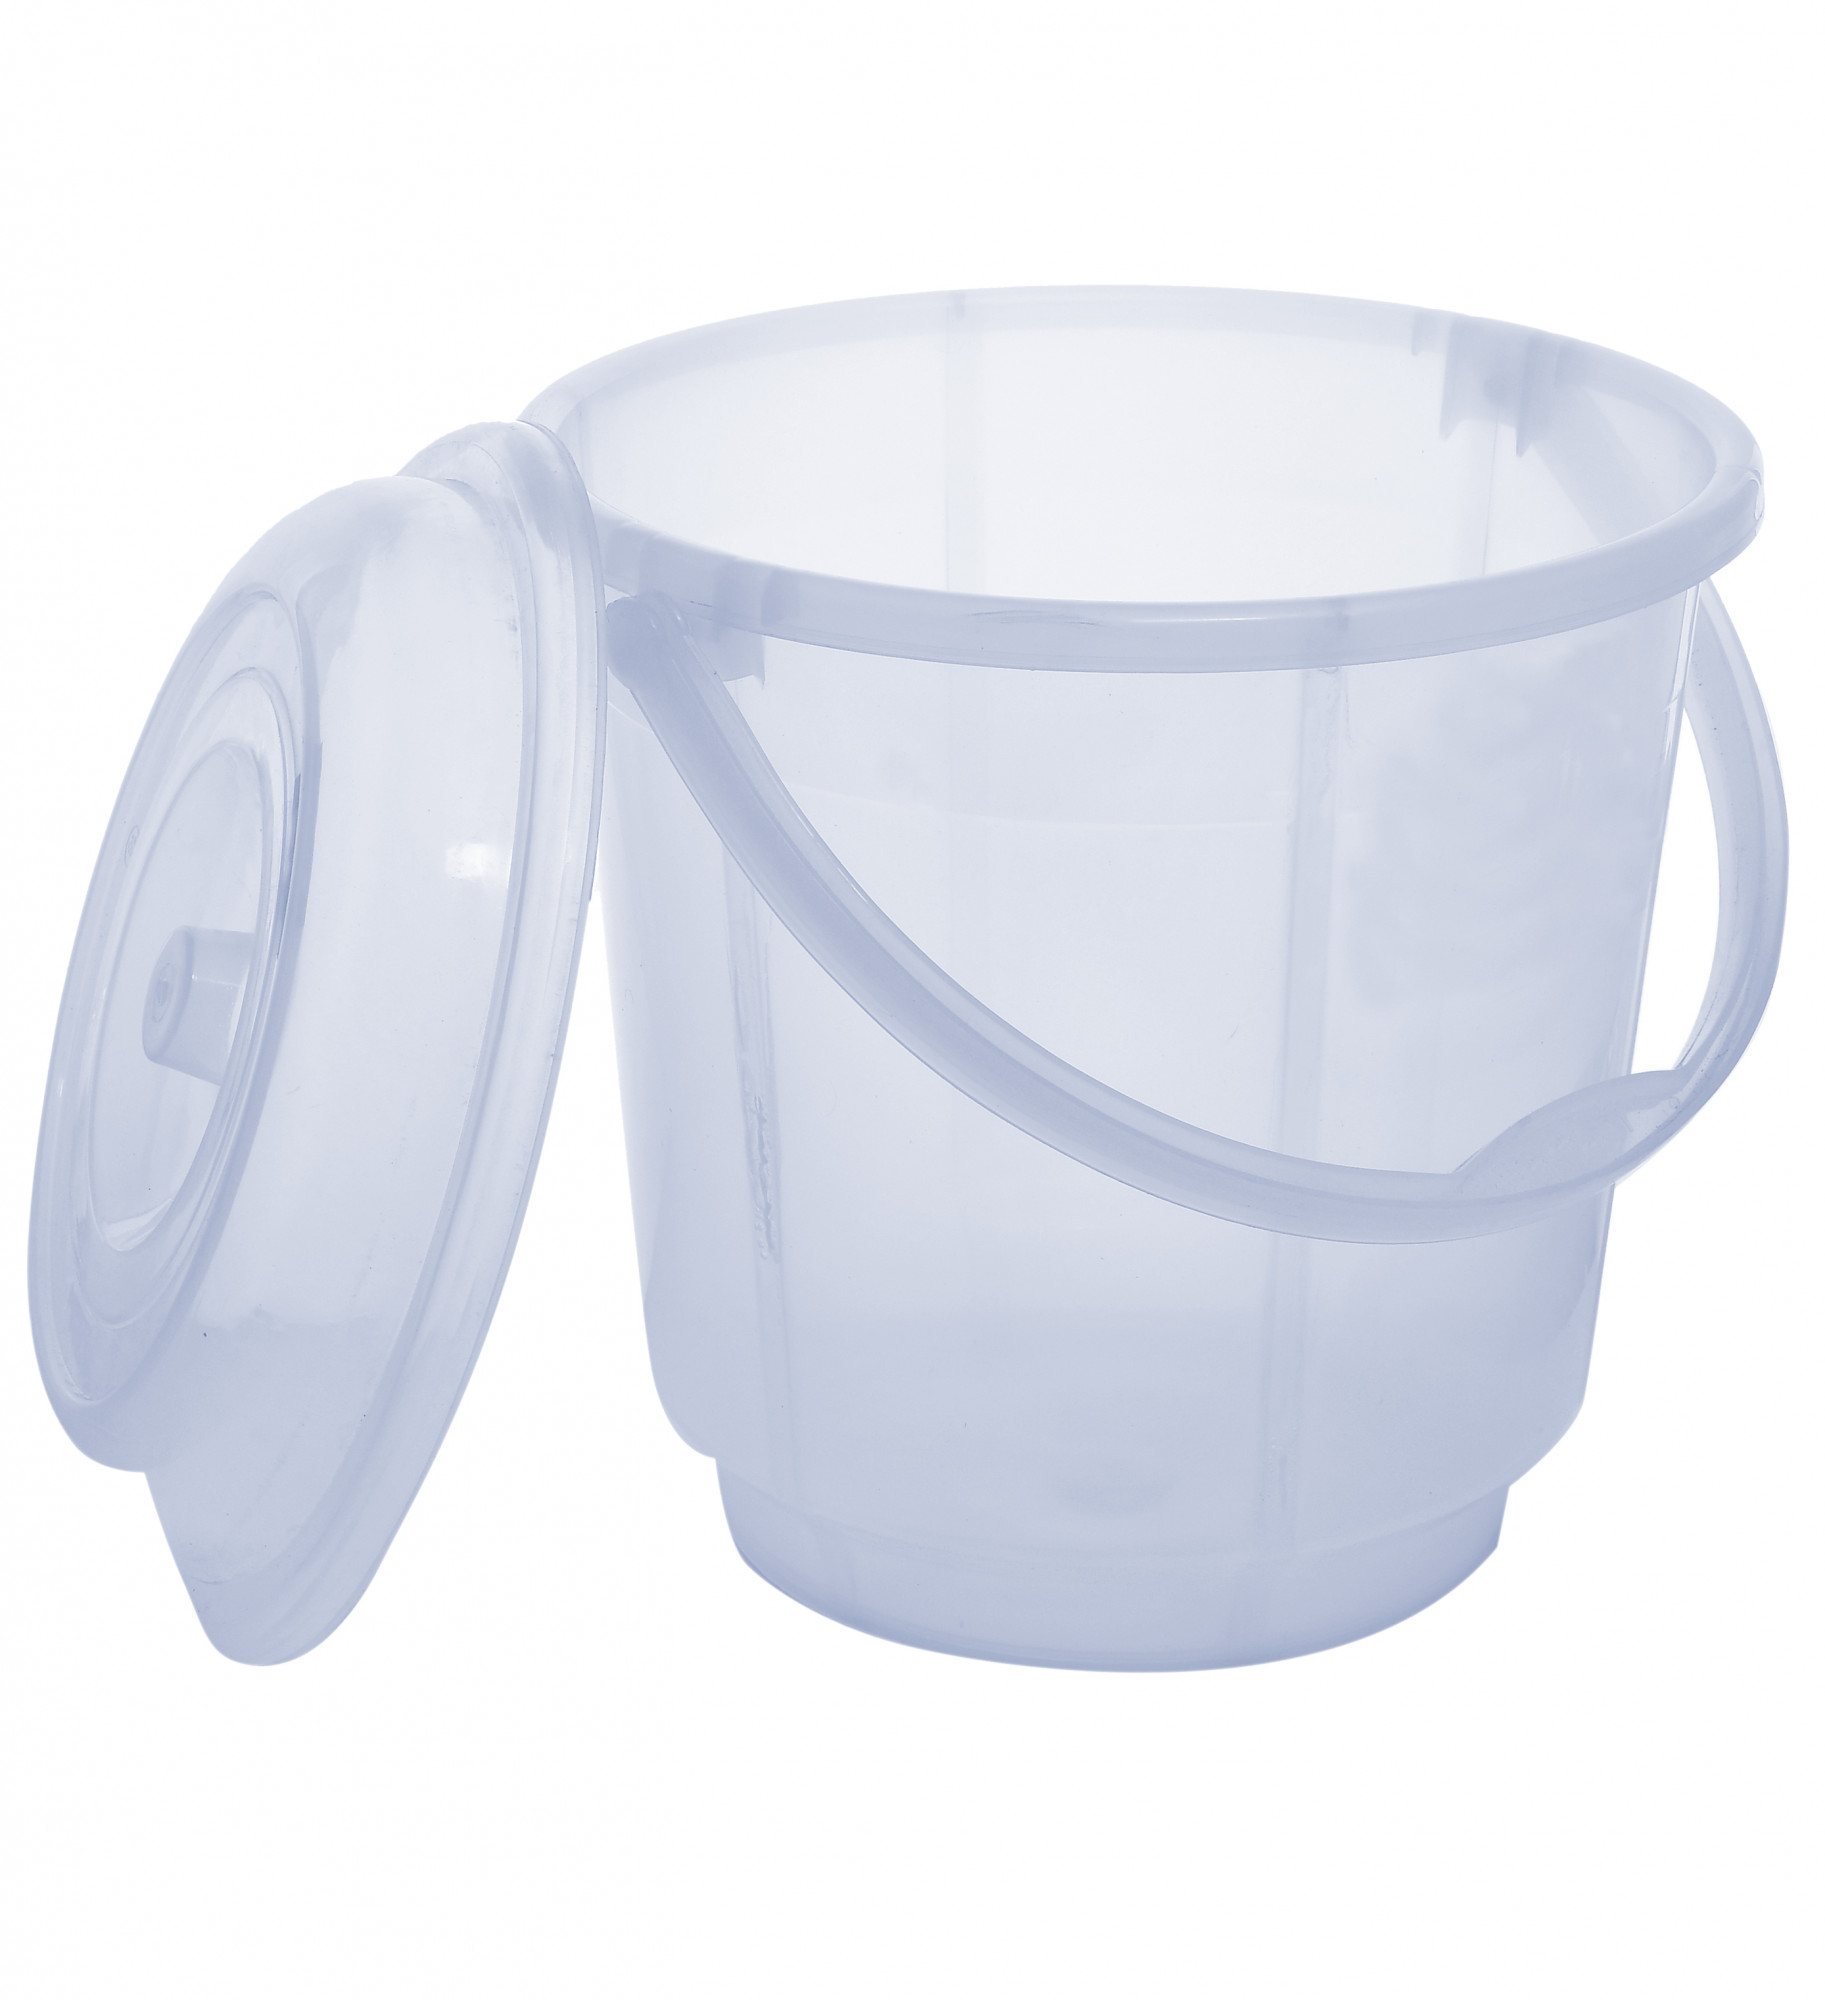 Kuber Industries Unbreakable Virgin Plastic Bathroom Bucket With Lid With Mug Combo Transparent, (18 LTR Bucket With Lid & 2 LTR Mug)-KUBMART838